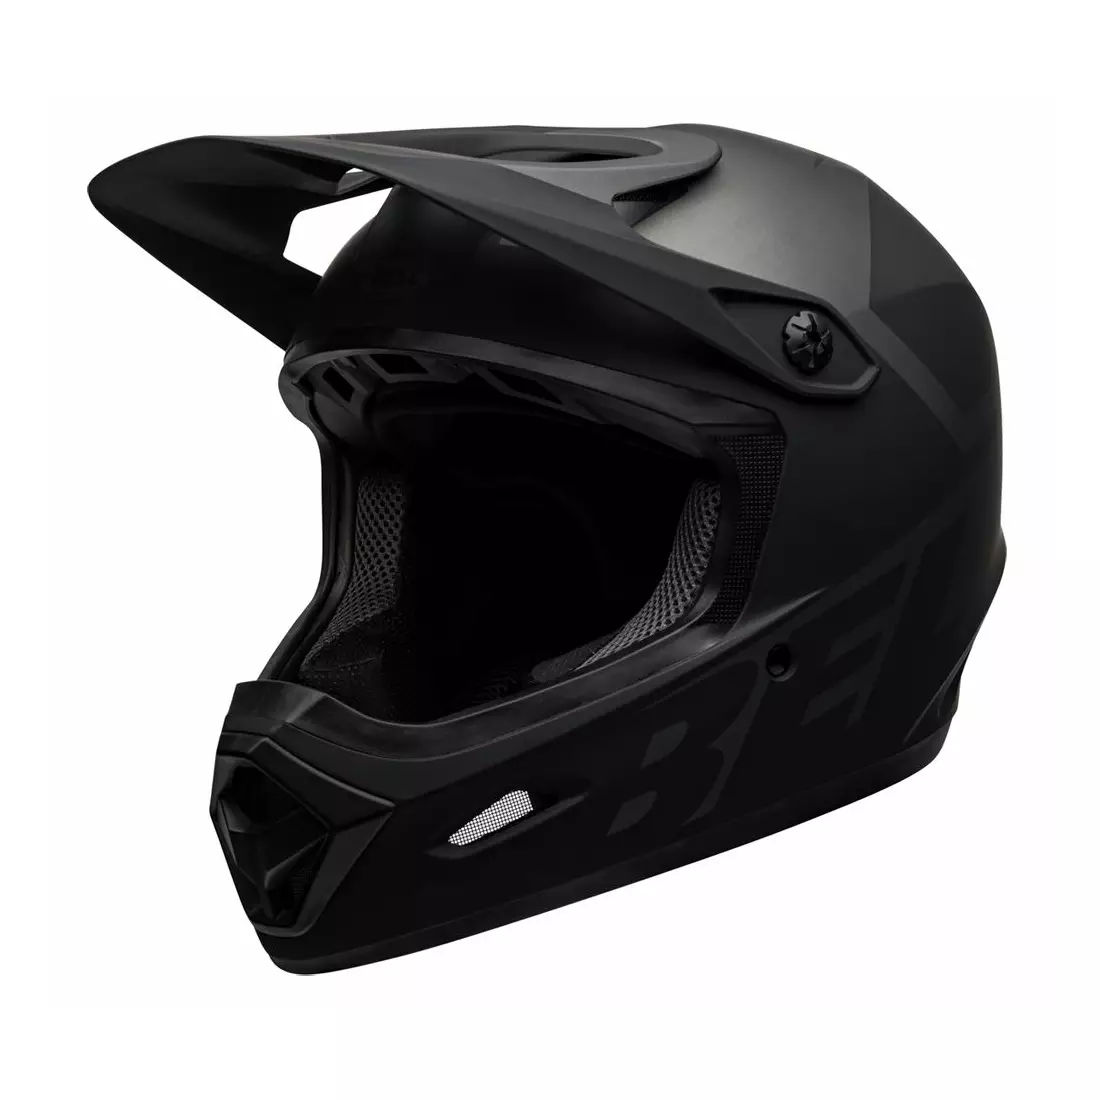 BELL Bicycle helmet full face TRANSFER matte black